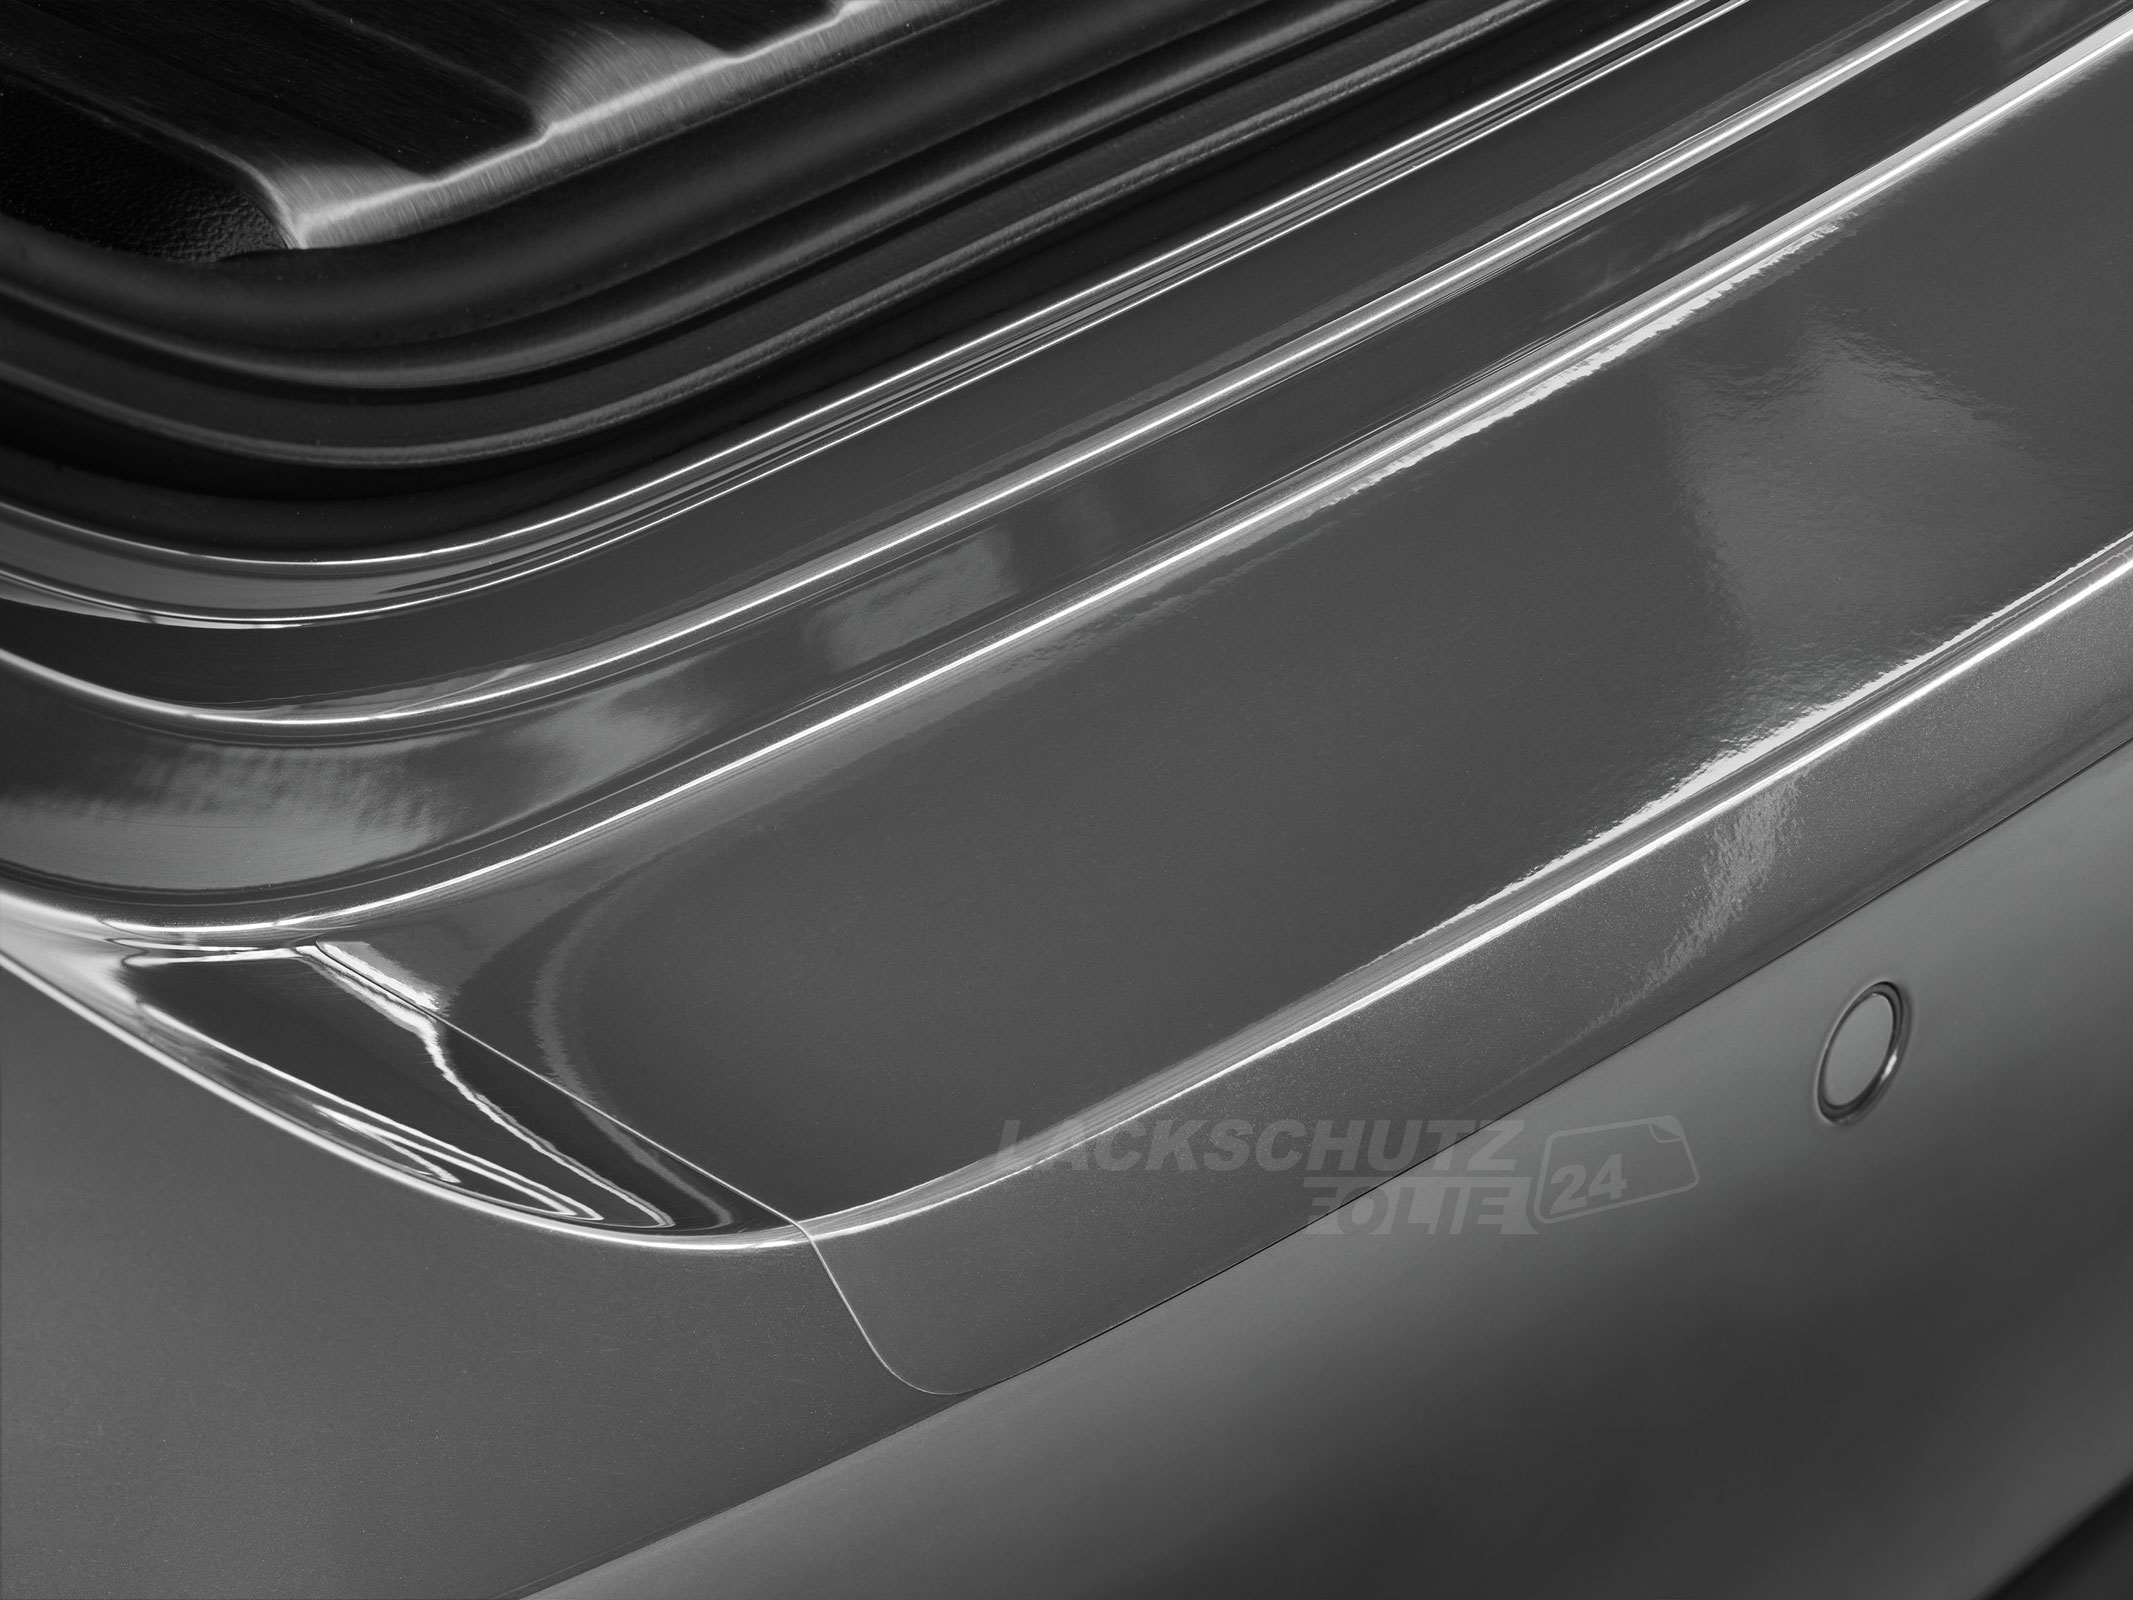 Ladekantenschutzfolie - Transparent Glatt Hochglänzend 150 µm stark für BMW Z4 Typ E89 Coupe, BJ 2009-2013